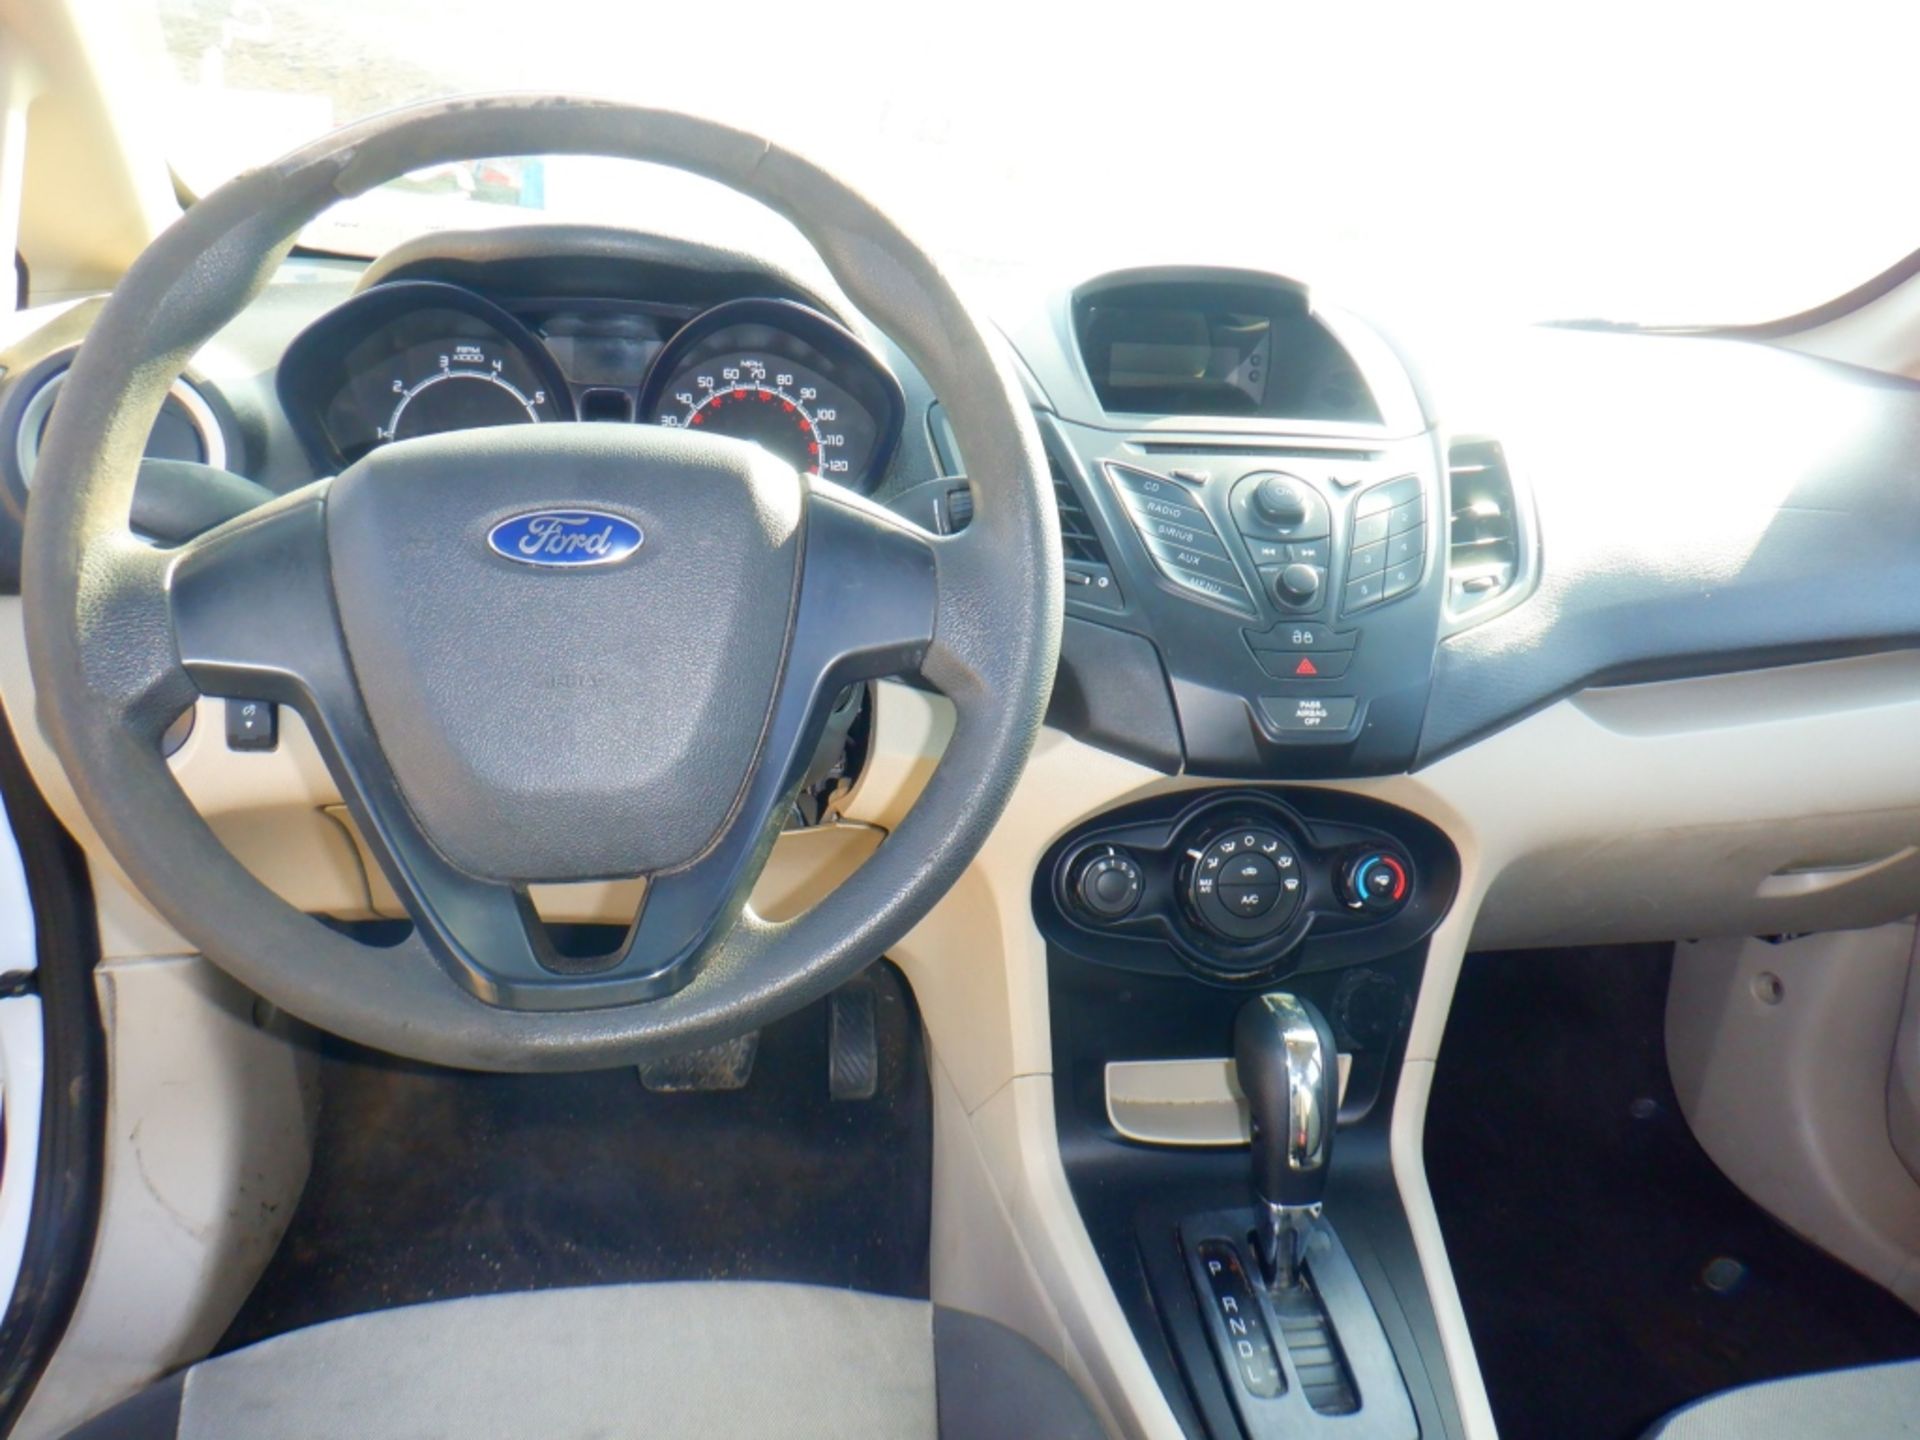 2013 Ford Fiesta Sedan, - Image 26 of 34